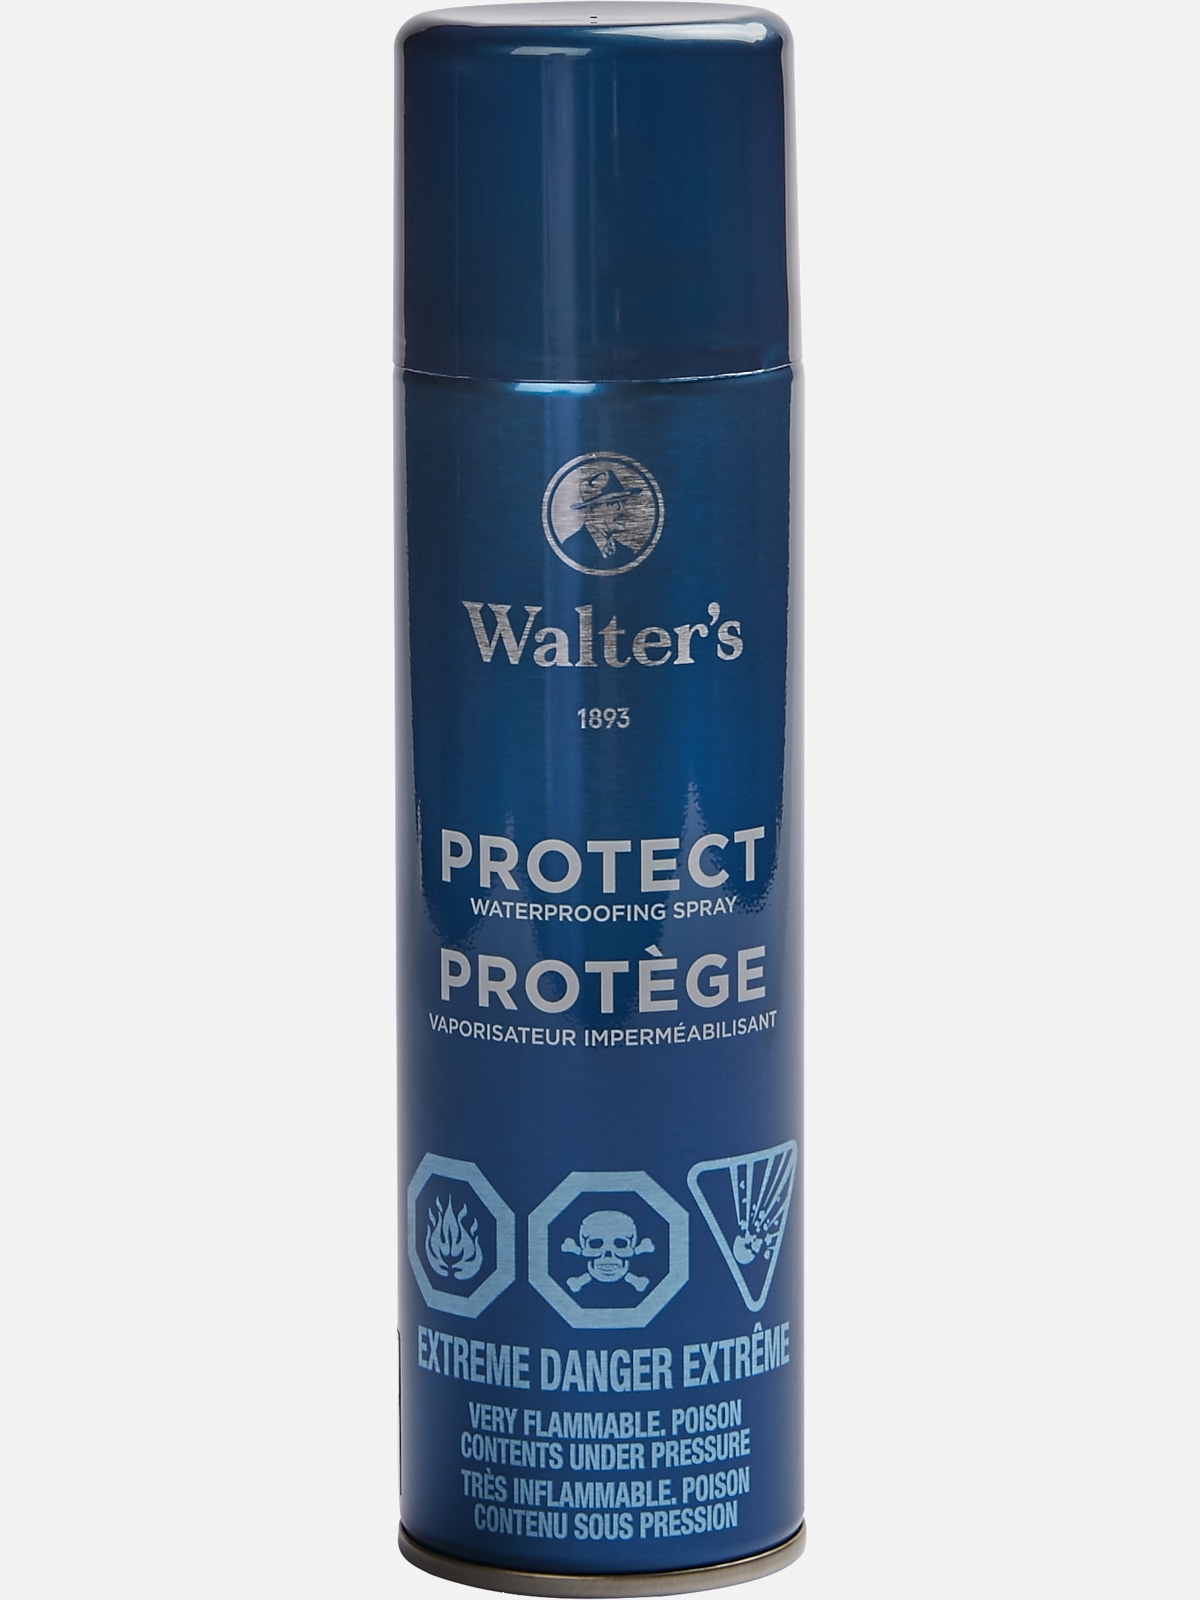  Shoe Protector Spray